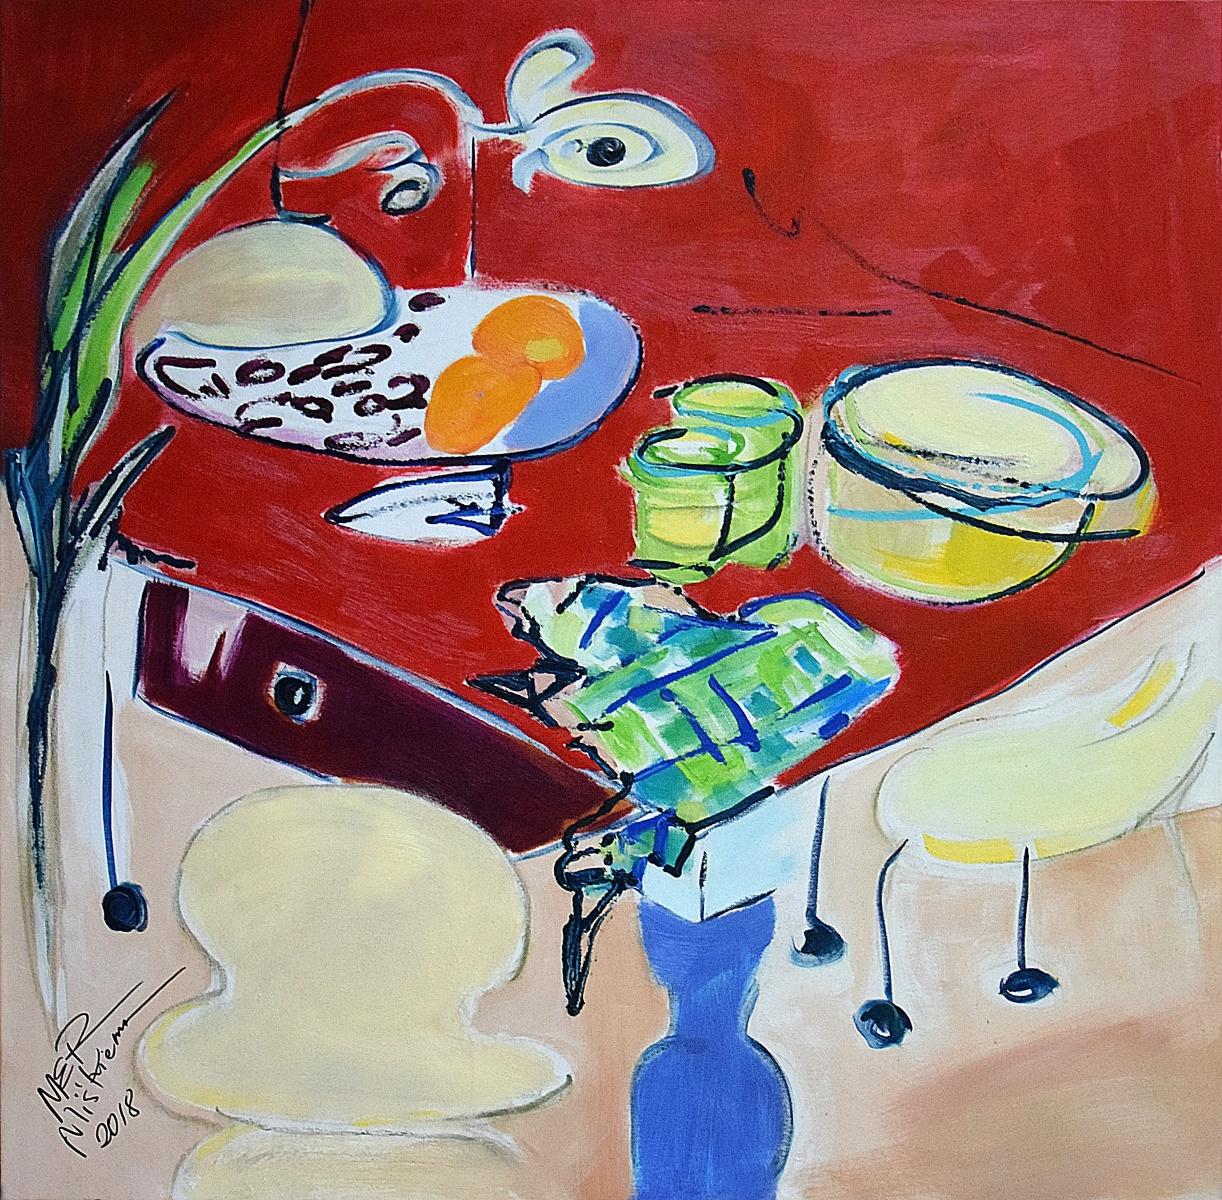 Roter Tisch - Stillleben des 20. Jahrhunderts, figuratives Ölgemälde, leuchtende Farben